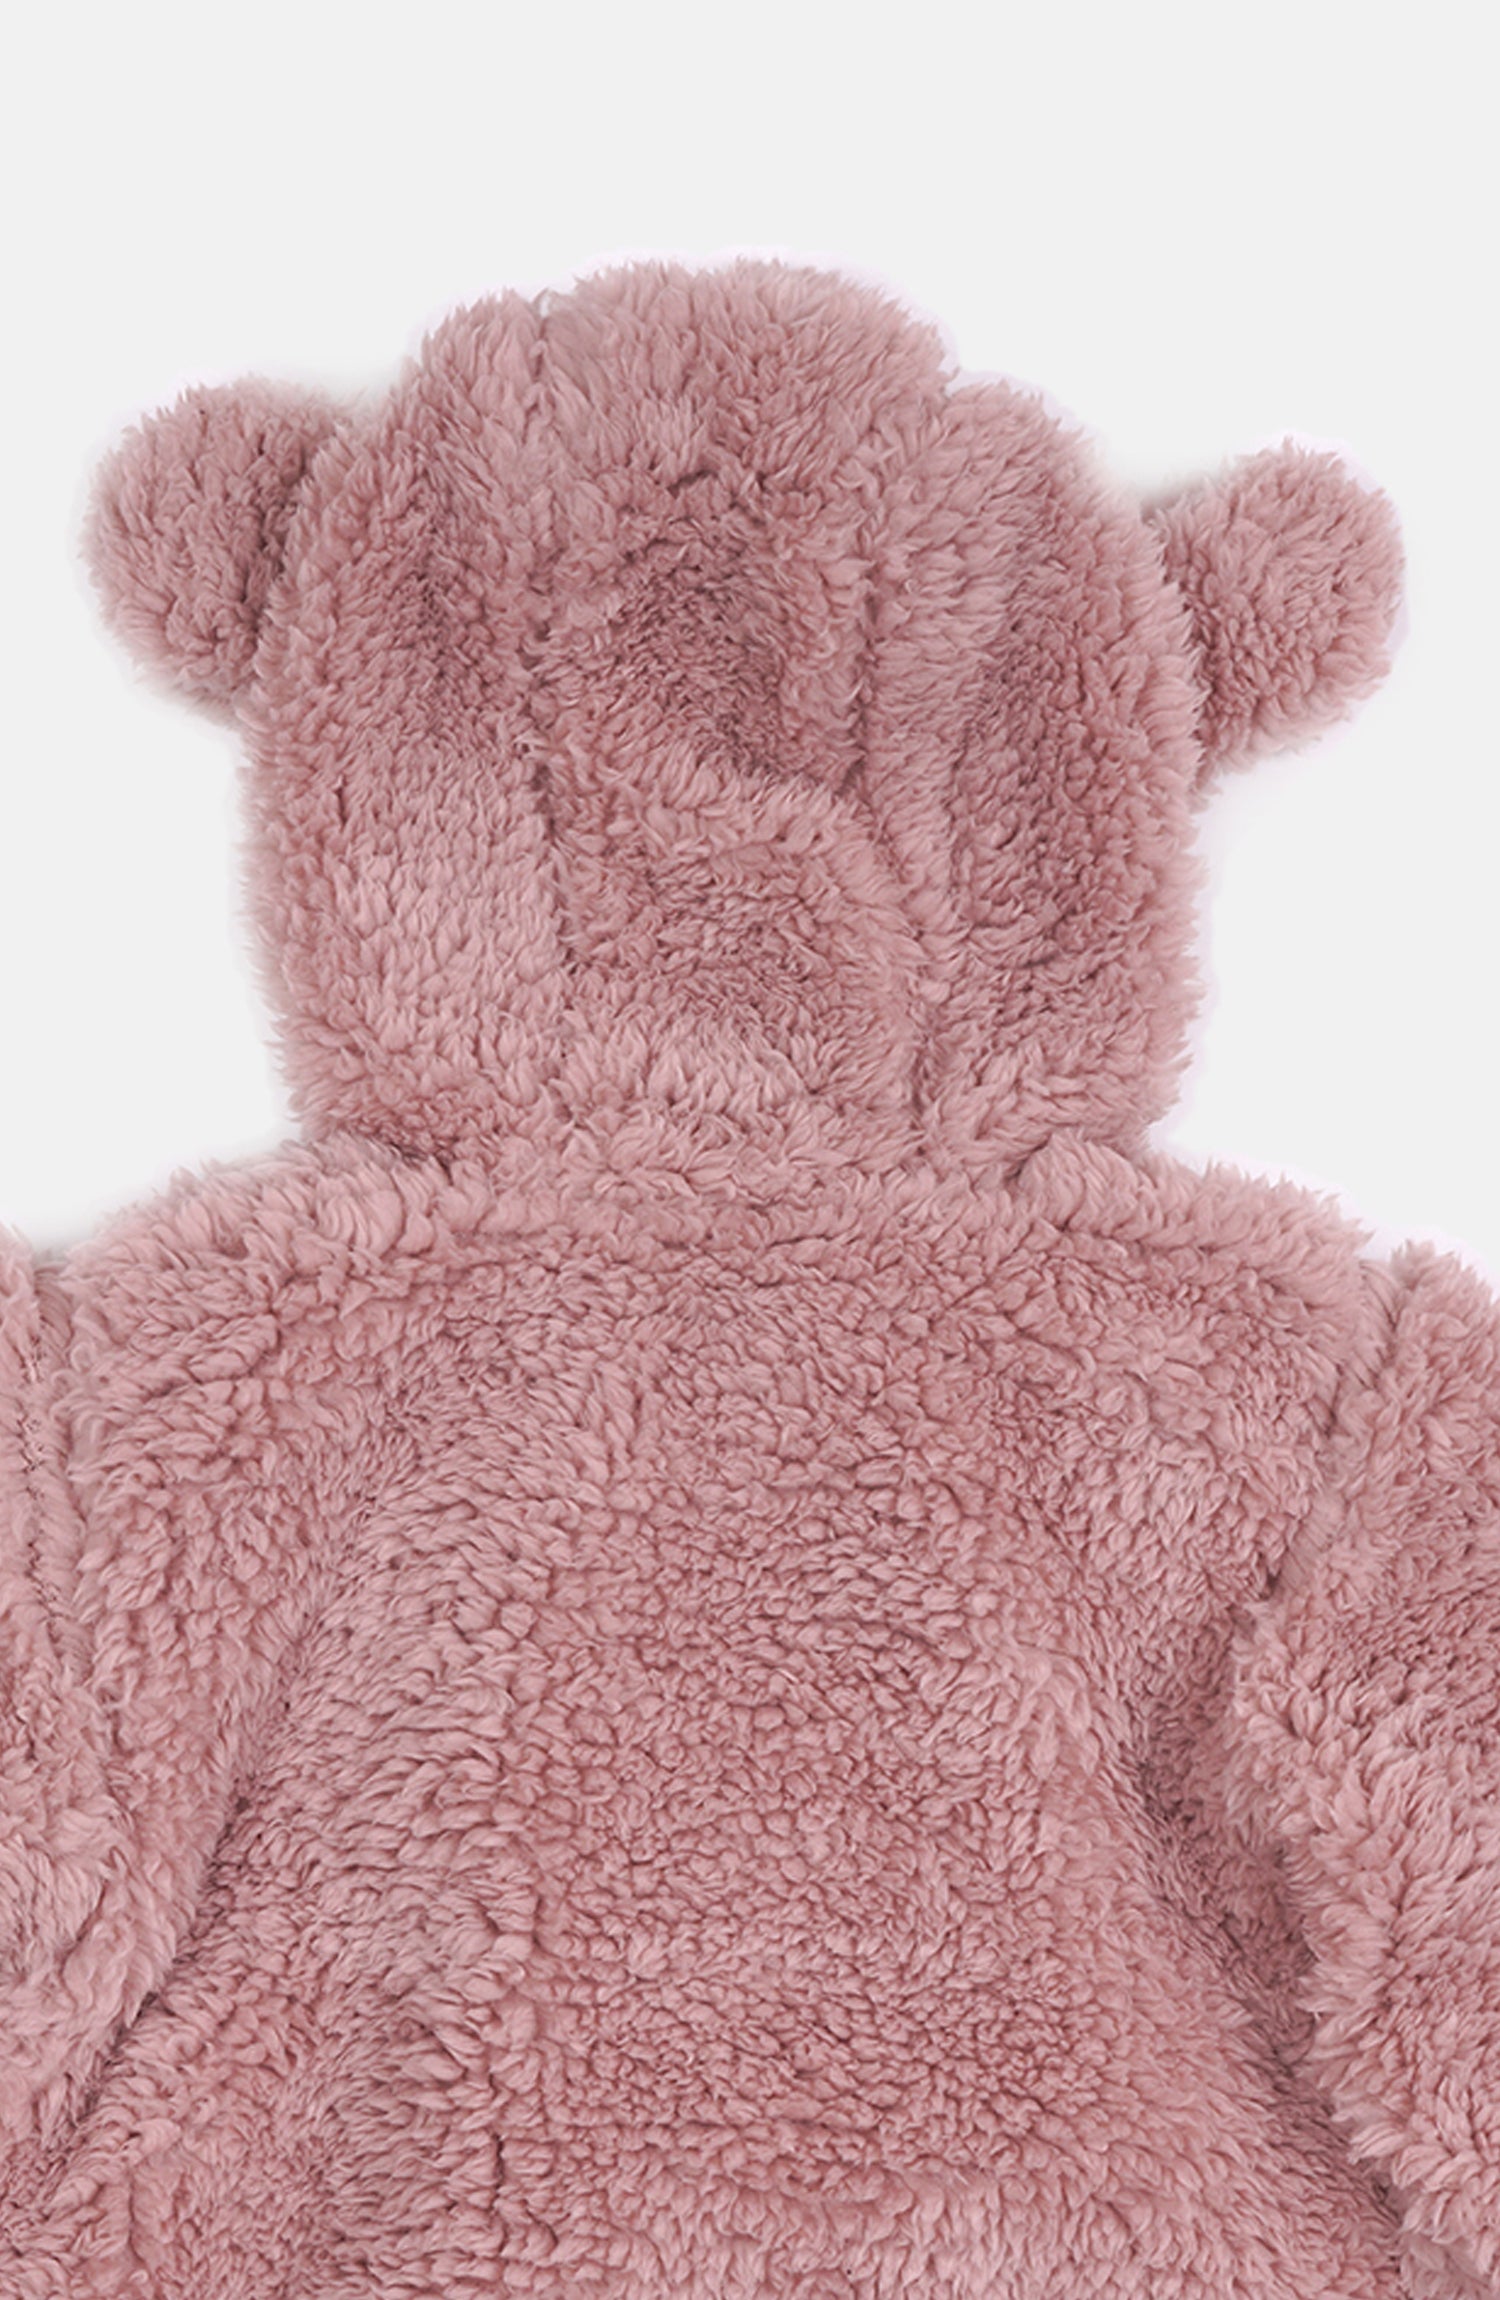 Hooded Teddy Bear Sweatshirt Ear Hoodie